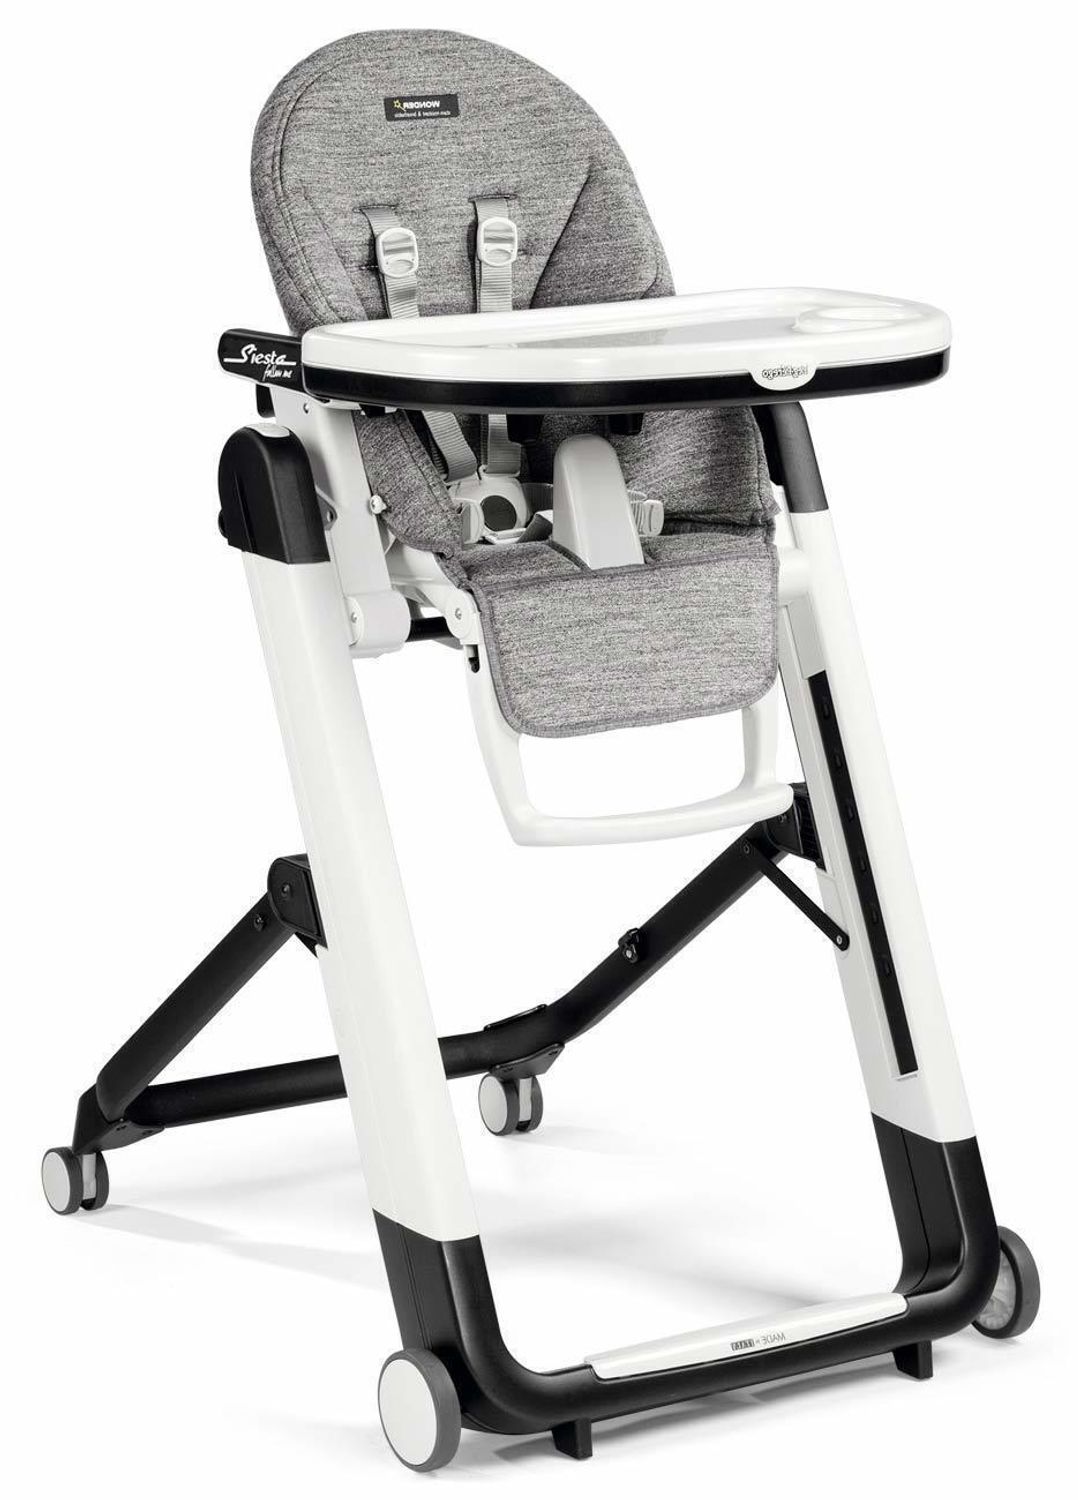 Ремни безопасности для детского стульчика peg perego